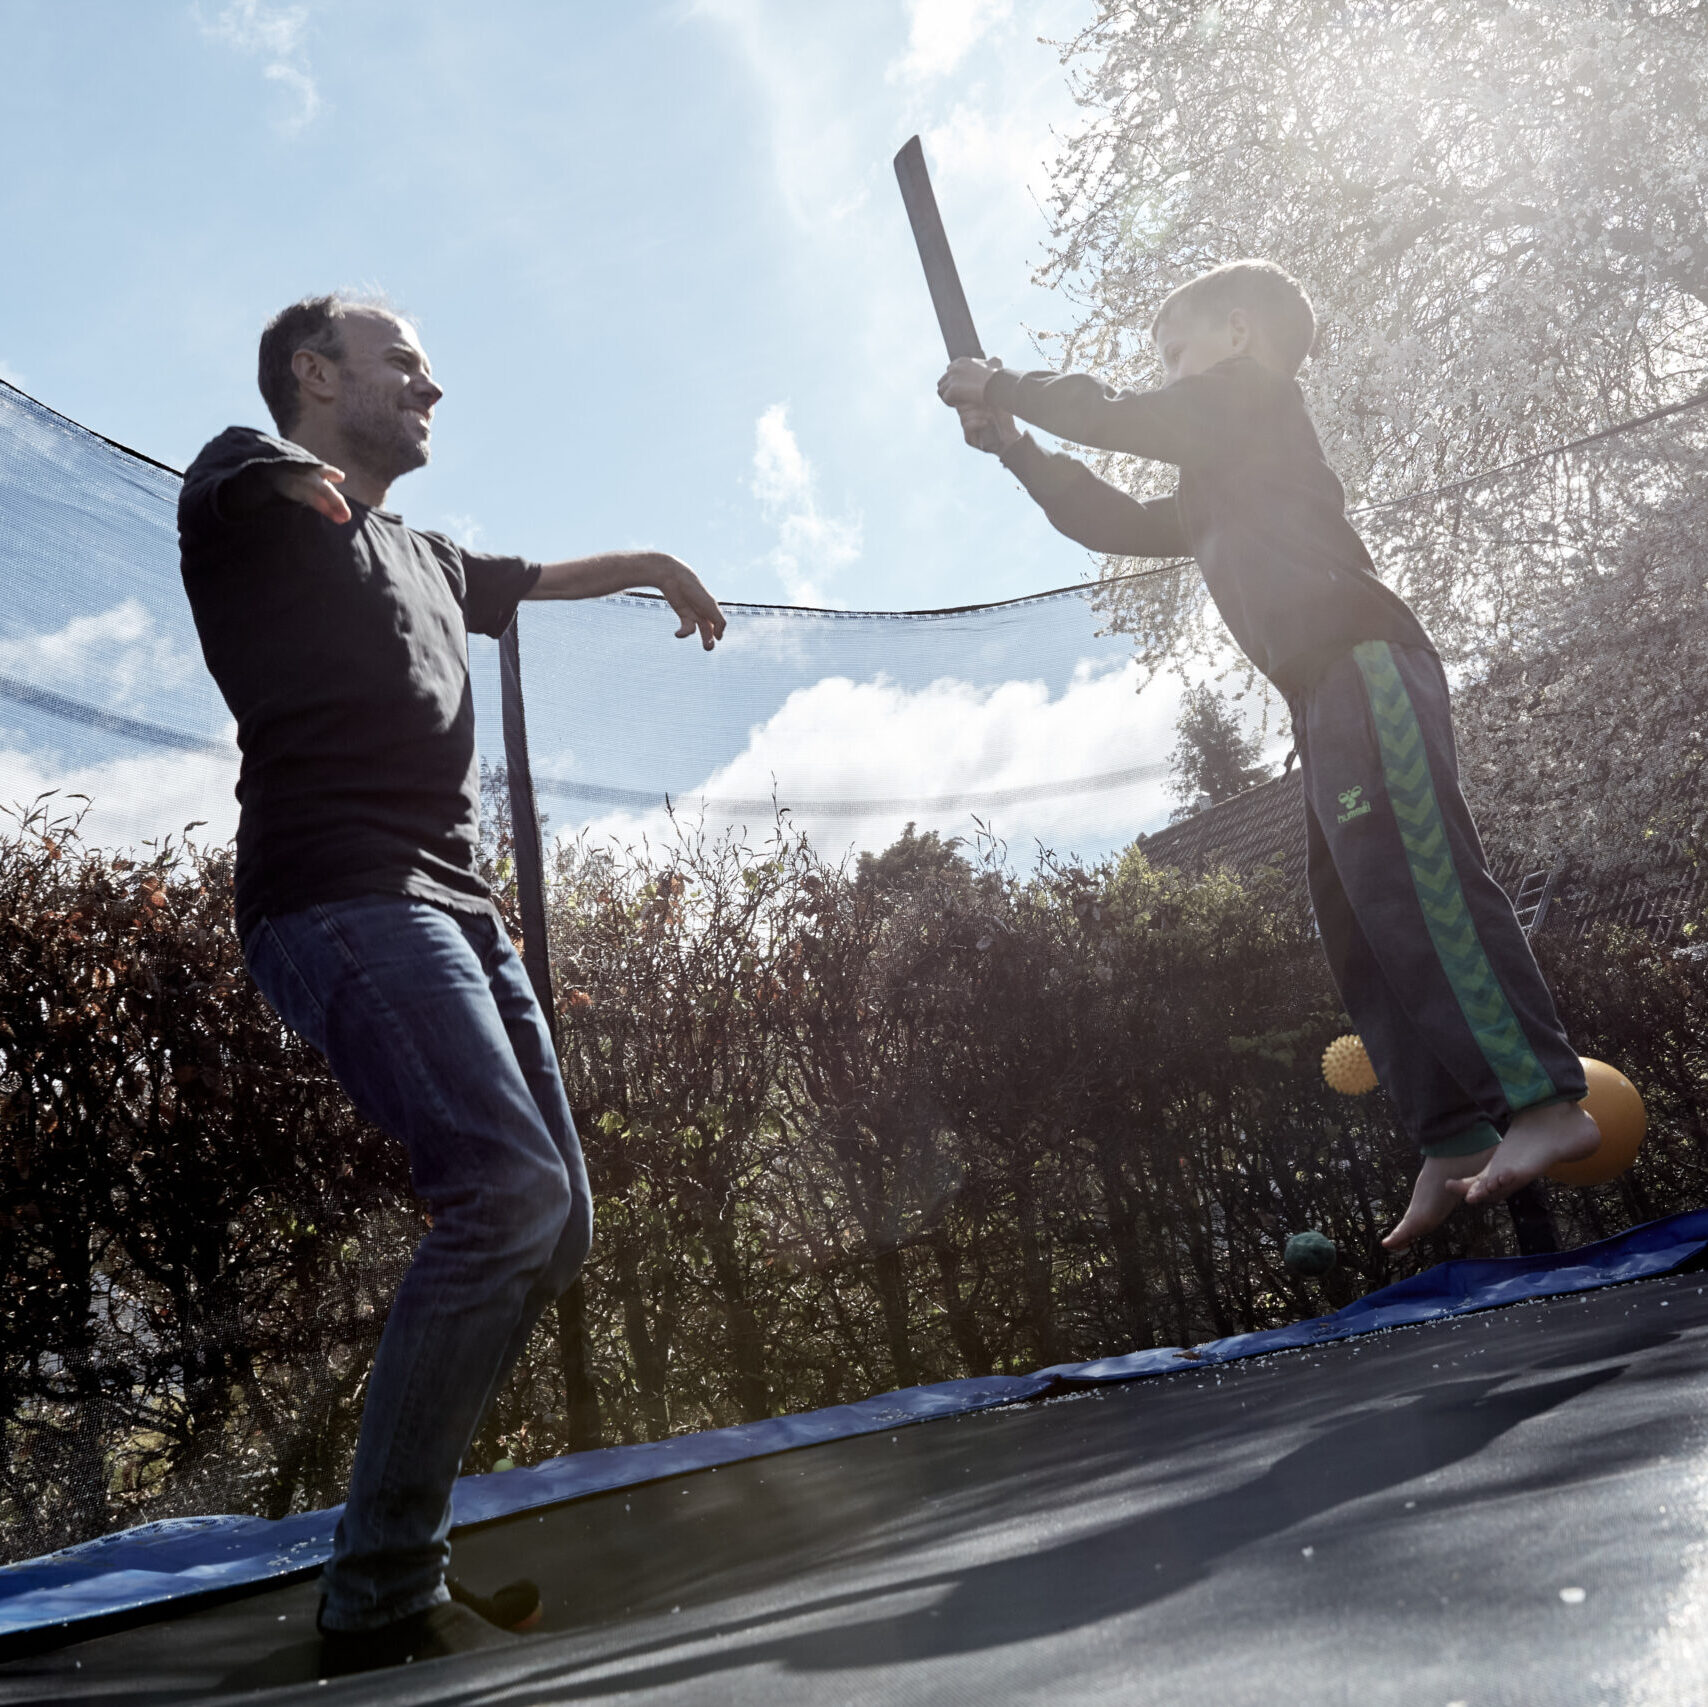 Foto: Lars Bech - Asger Krebs hopper på trampolinen med sin søn